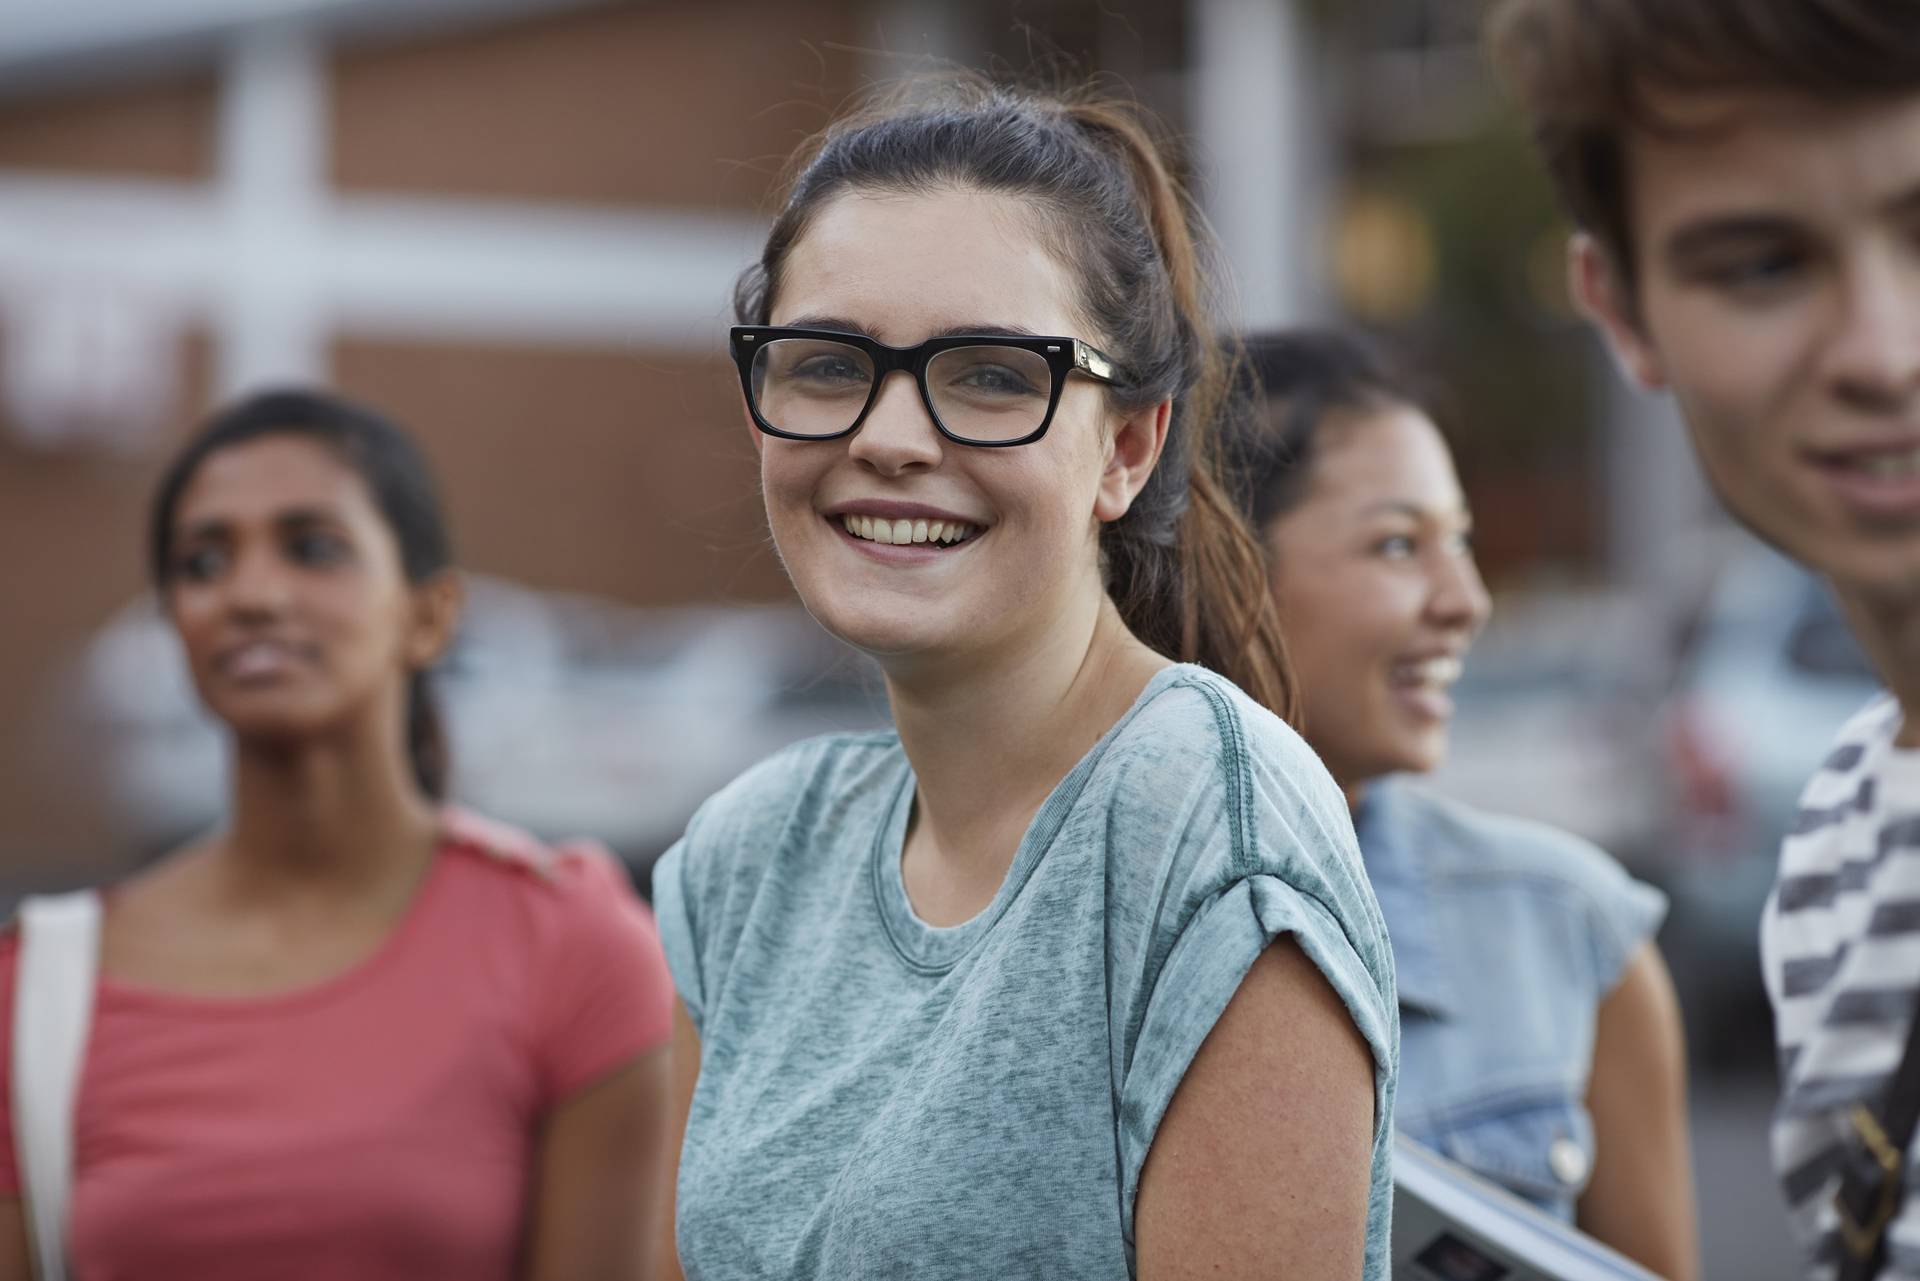 Gruppe junger Menschen mit einer lachenden Frau mit markanter Brille im Vordergrund.